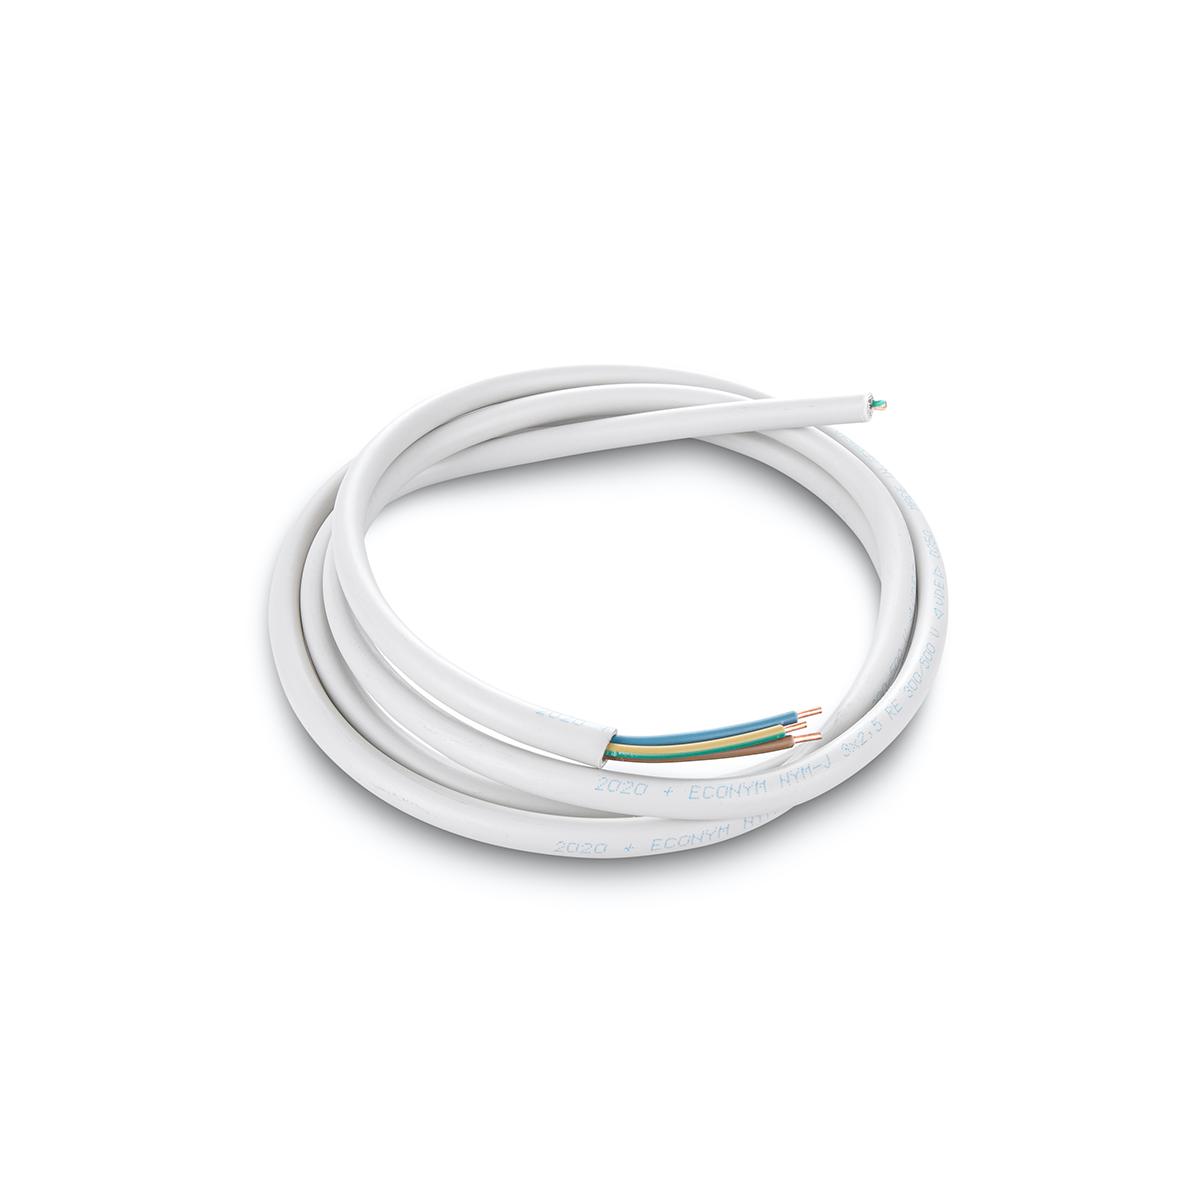 25m Mantelleitung Stromkabel NYM-J 3 x 2,5 Grau Elektrokabel Kabel